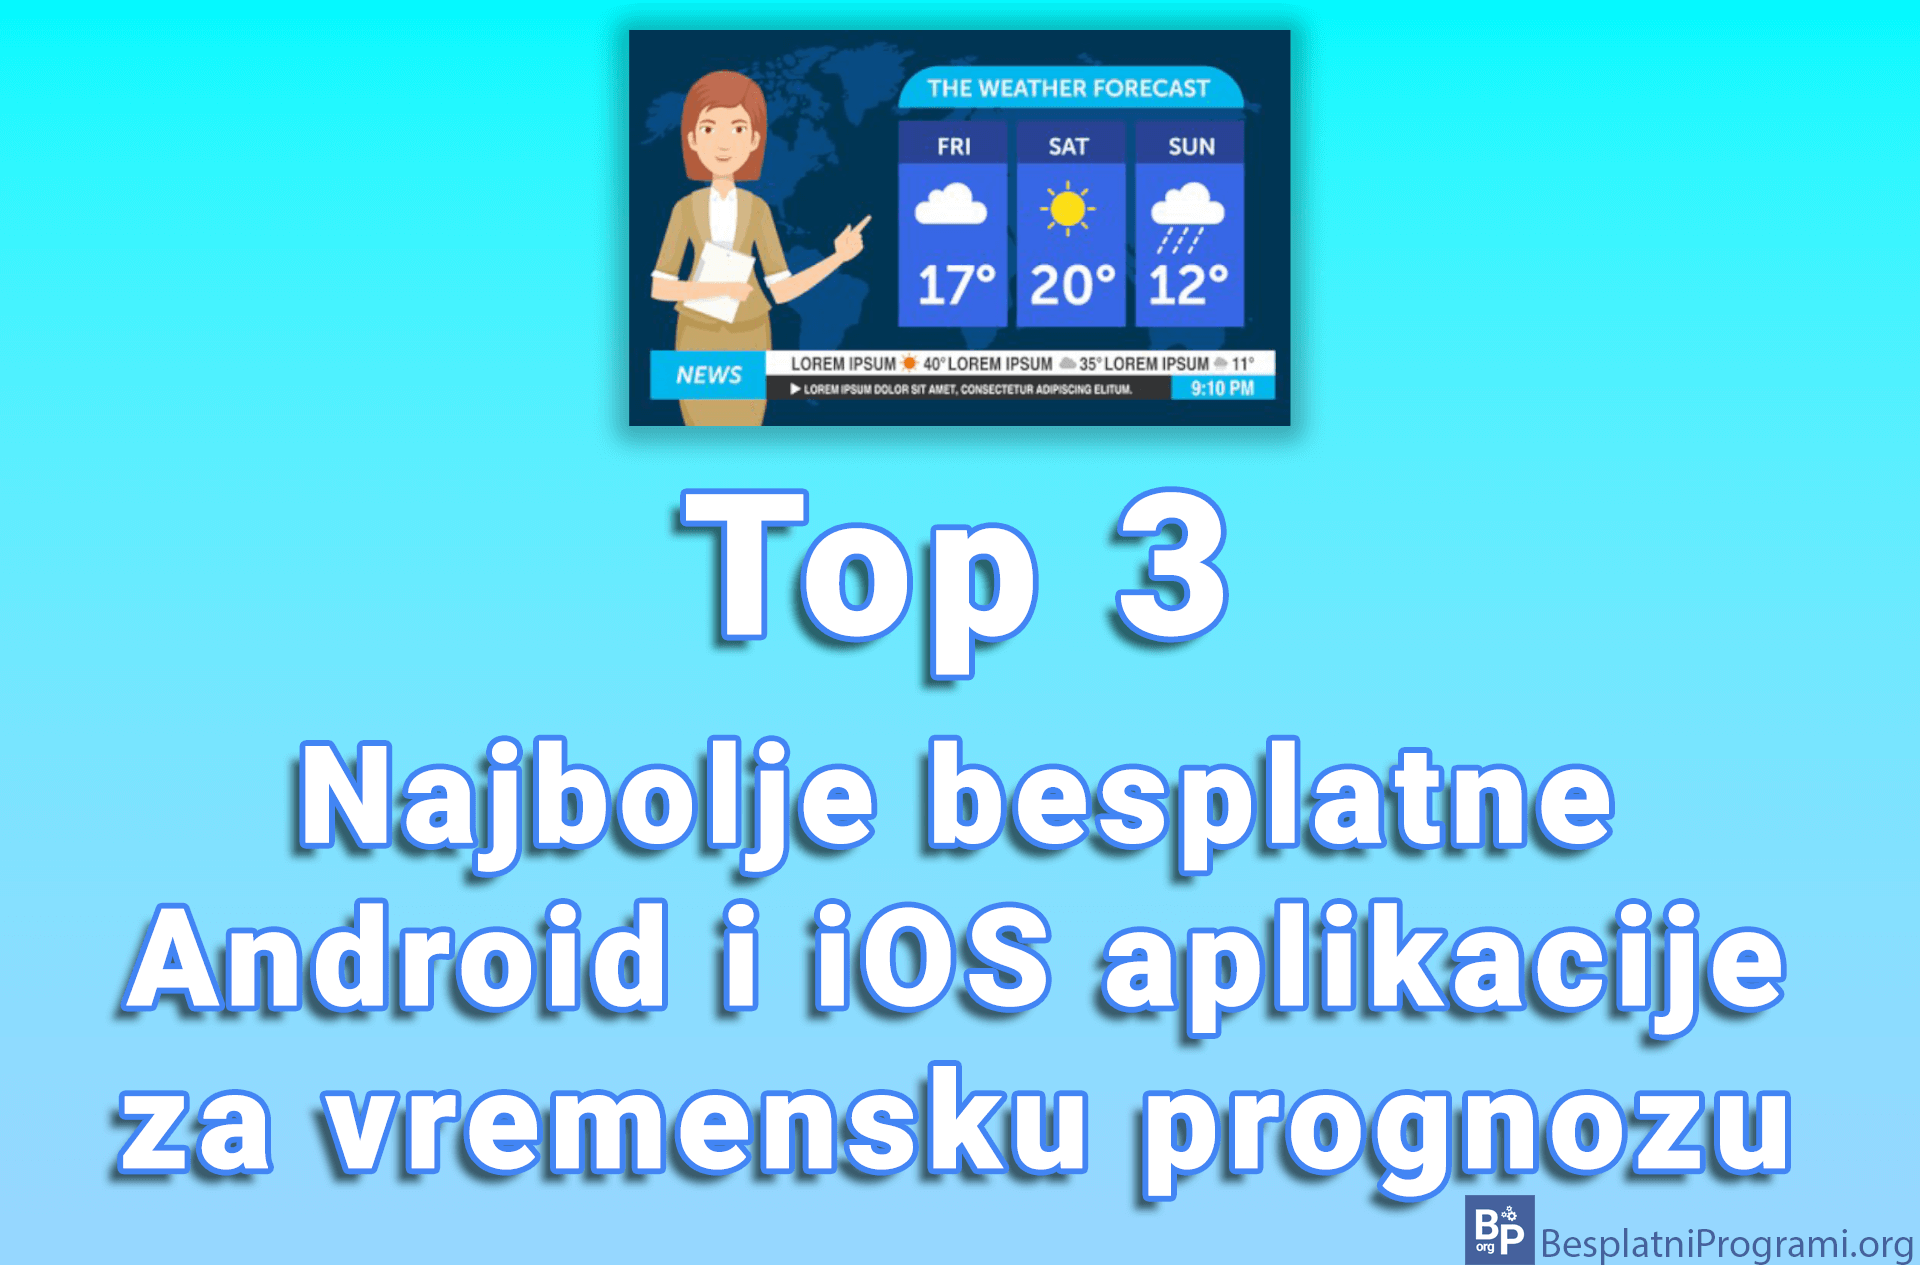 Top 3 najbolje besplatne Android i iOS aplikacije za vremensku prognozu